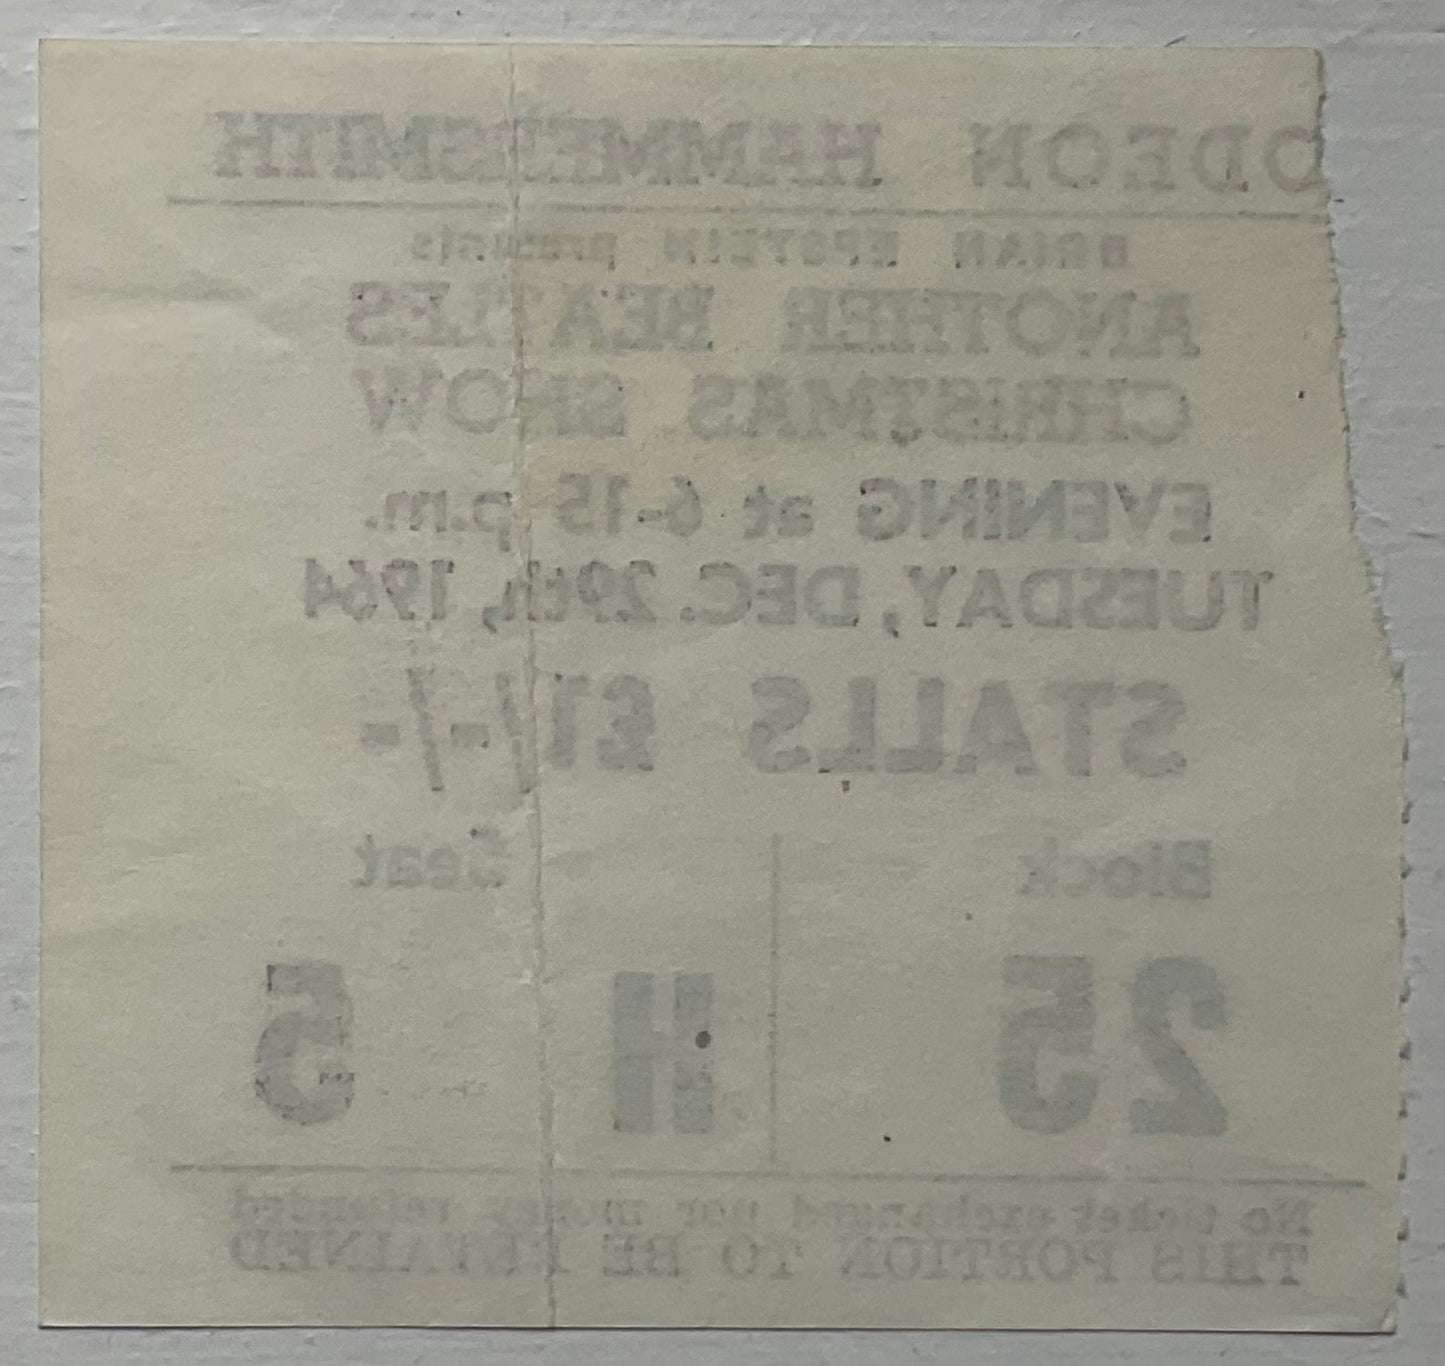 Beatles Original Used Concert Ticket Hammersmith Odeon London 29 Dec 1964